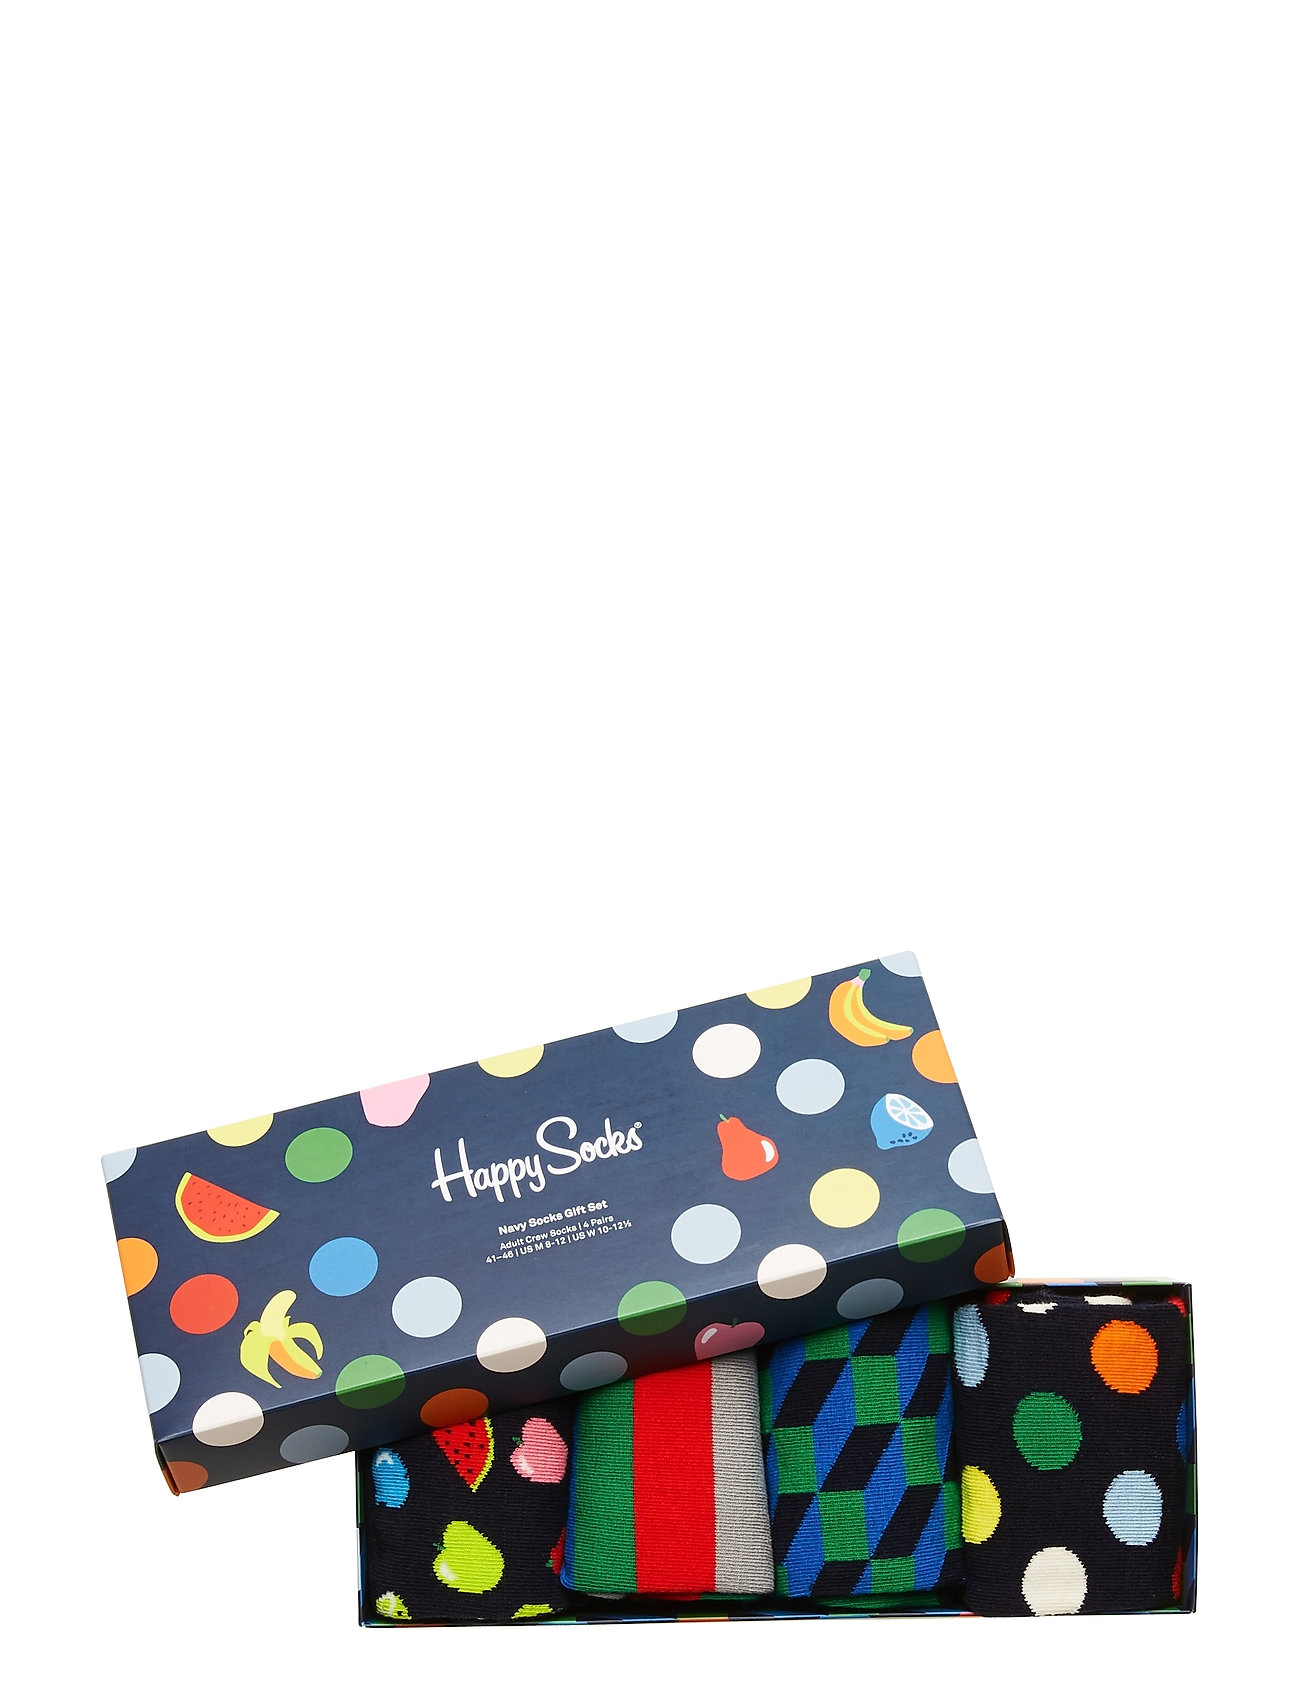 Happy Socks - 4-Pack Navy Socks Gift Set - regular socks - multi - 1